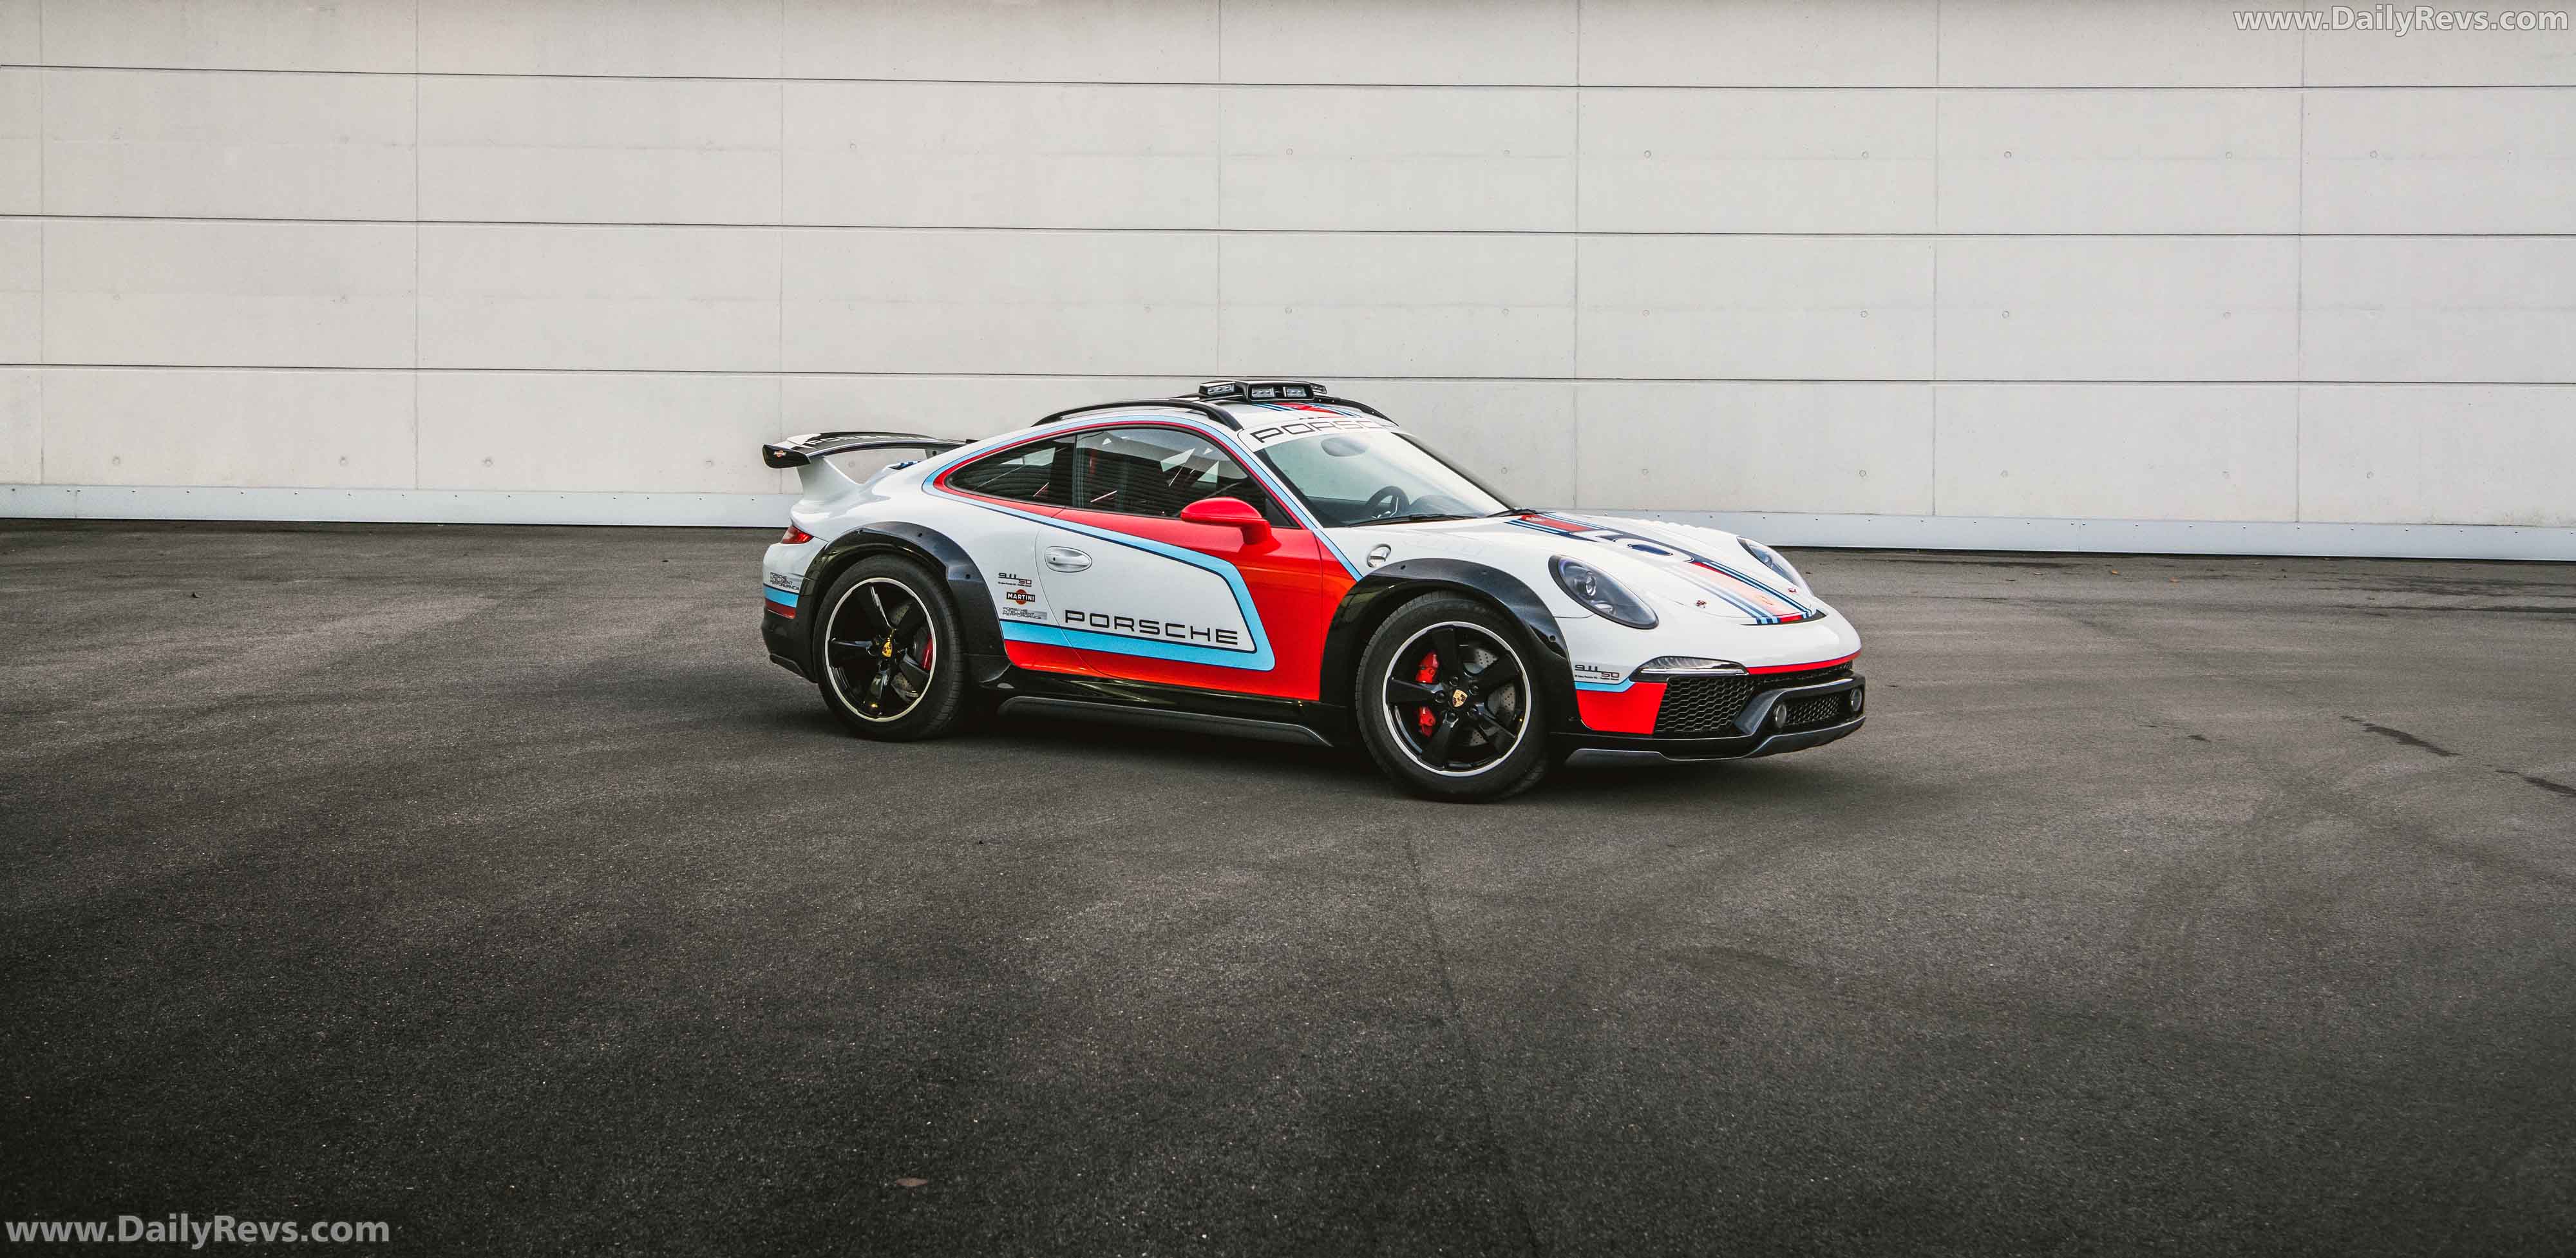 2012 Porsche 911 Vision Safari Concept